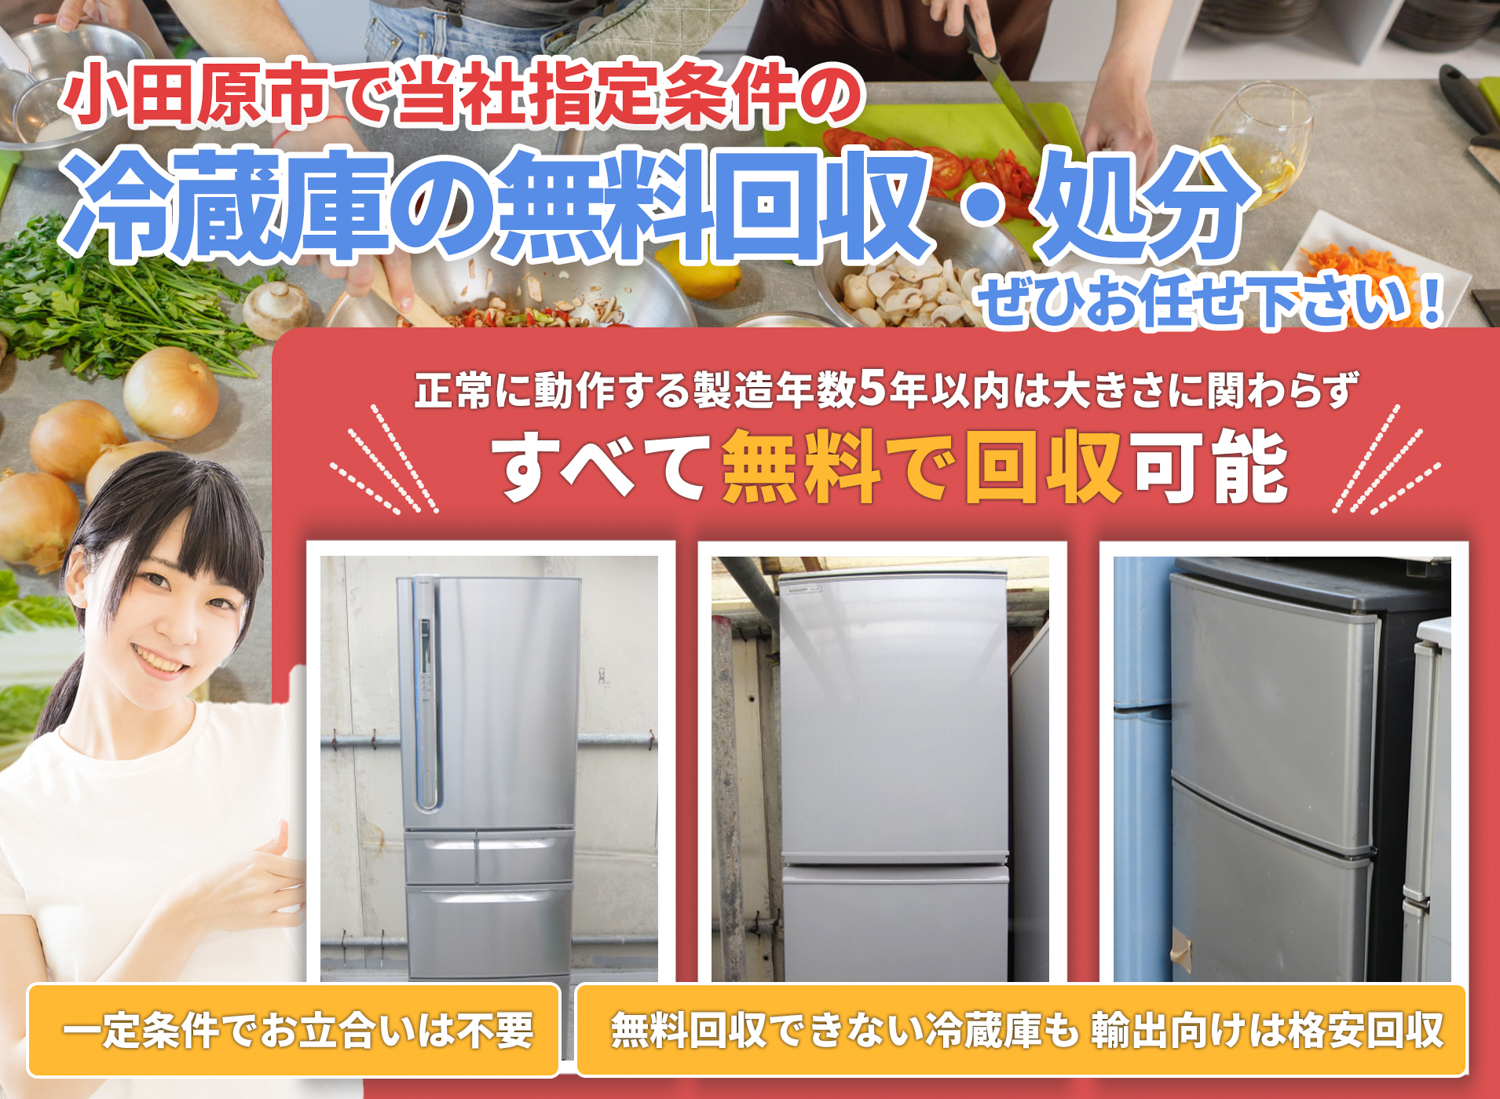 小田原市のサービスで地域一番を目指す冷蔵庫無料回収処分隊の冷蔵庫無料回収サービス